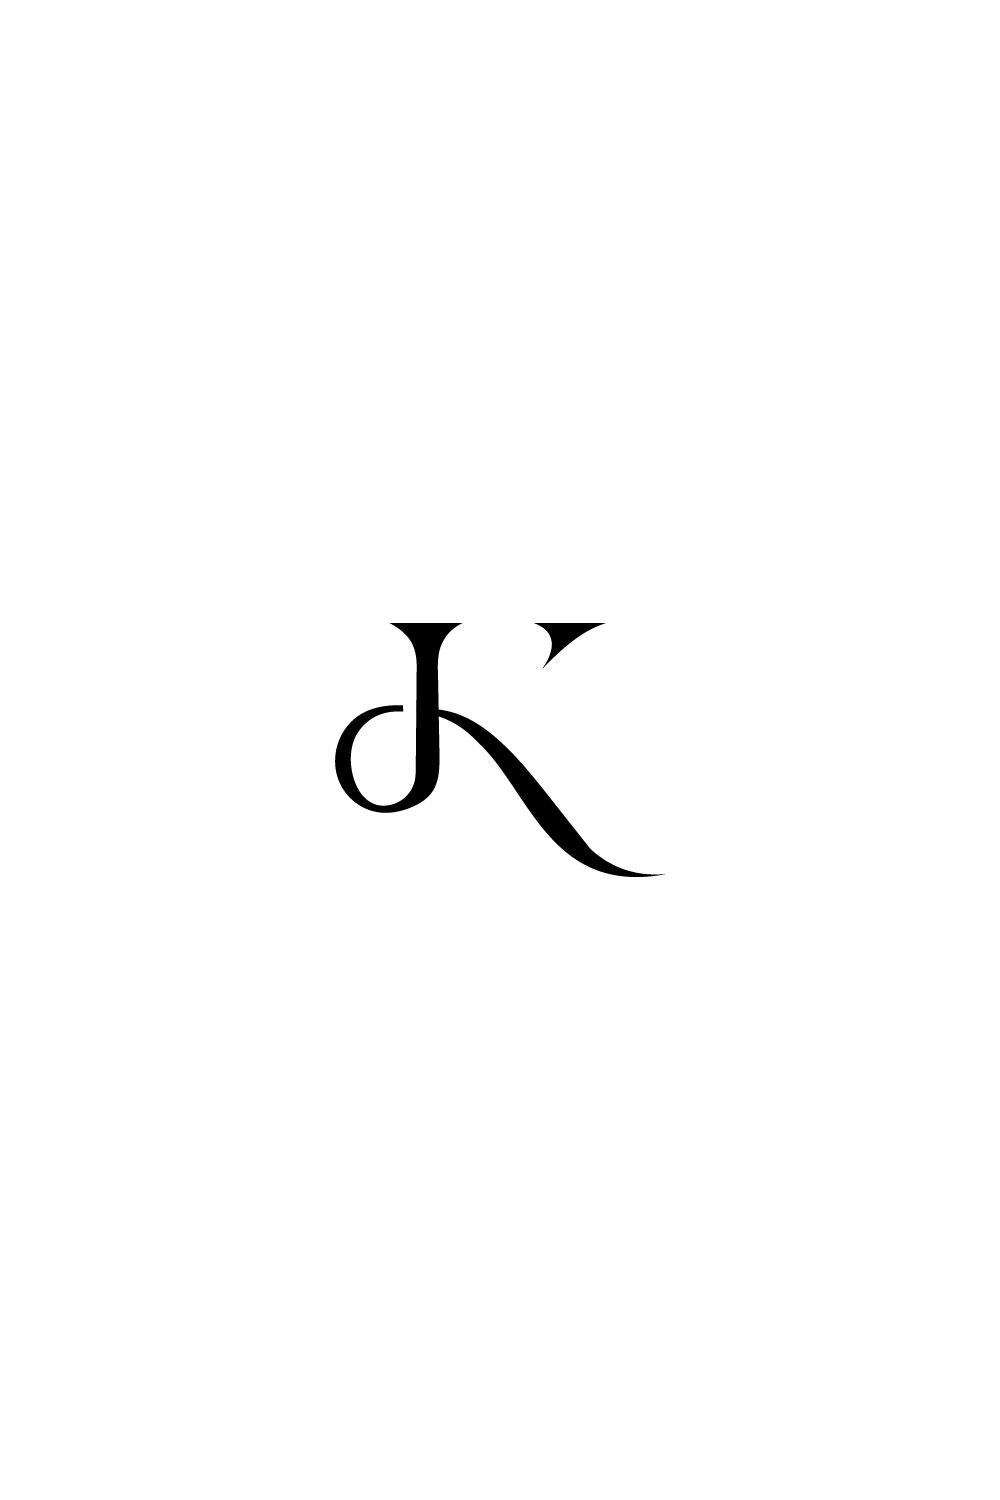 K Letter Logo Lilac Design Pinterest image.